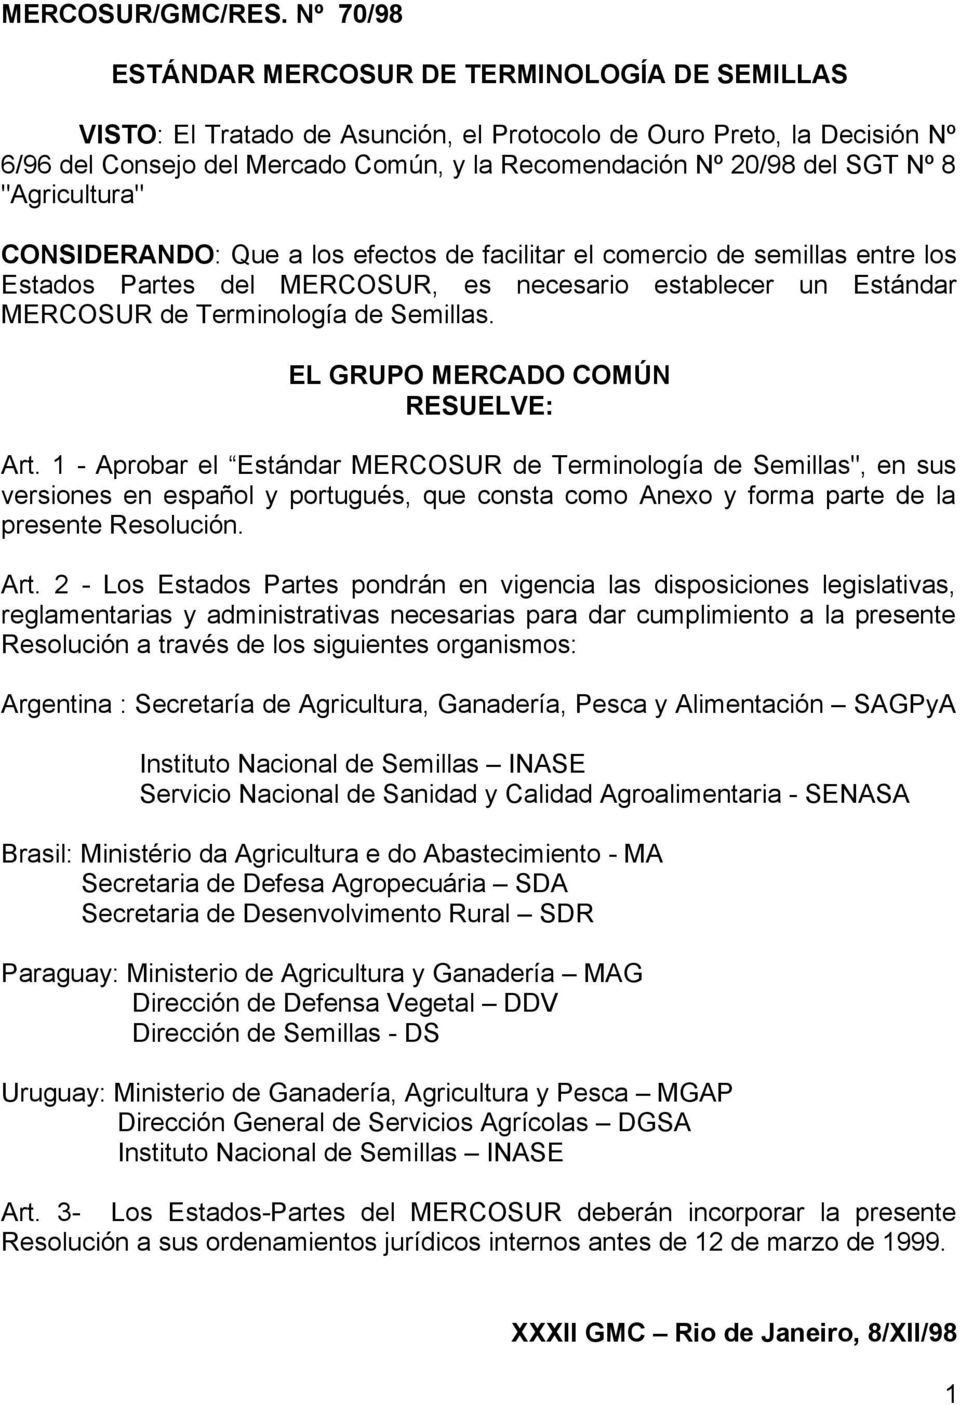 SGT Nº 8 "Agricultura" CONSIDERANDO: Que a los efectos de facilitar el comercio de semillas entre los Estados Partes del MERCOSUR, es necesario establecer un Estándar MERCOSUR de Terminología de